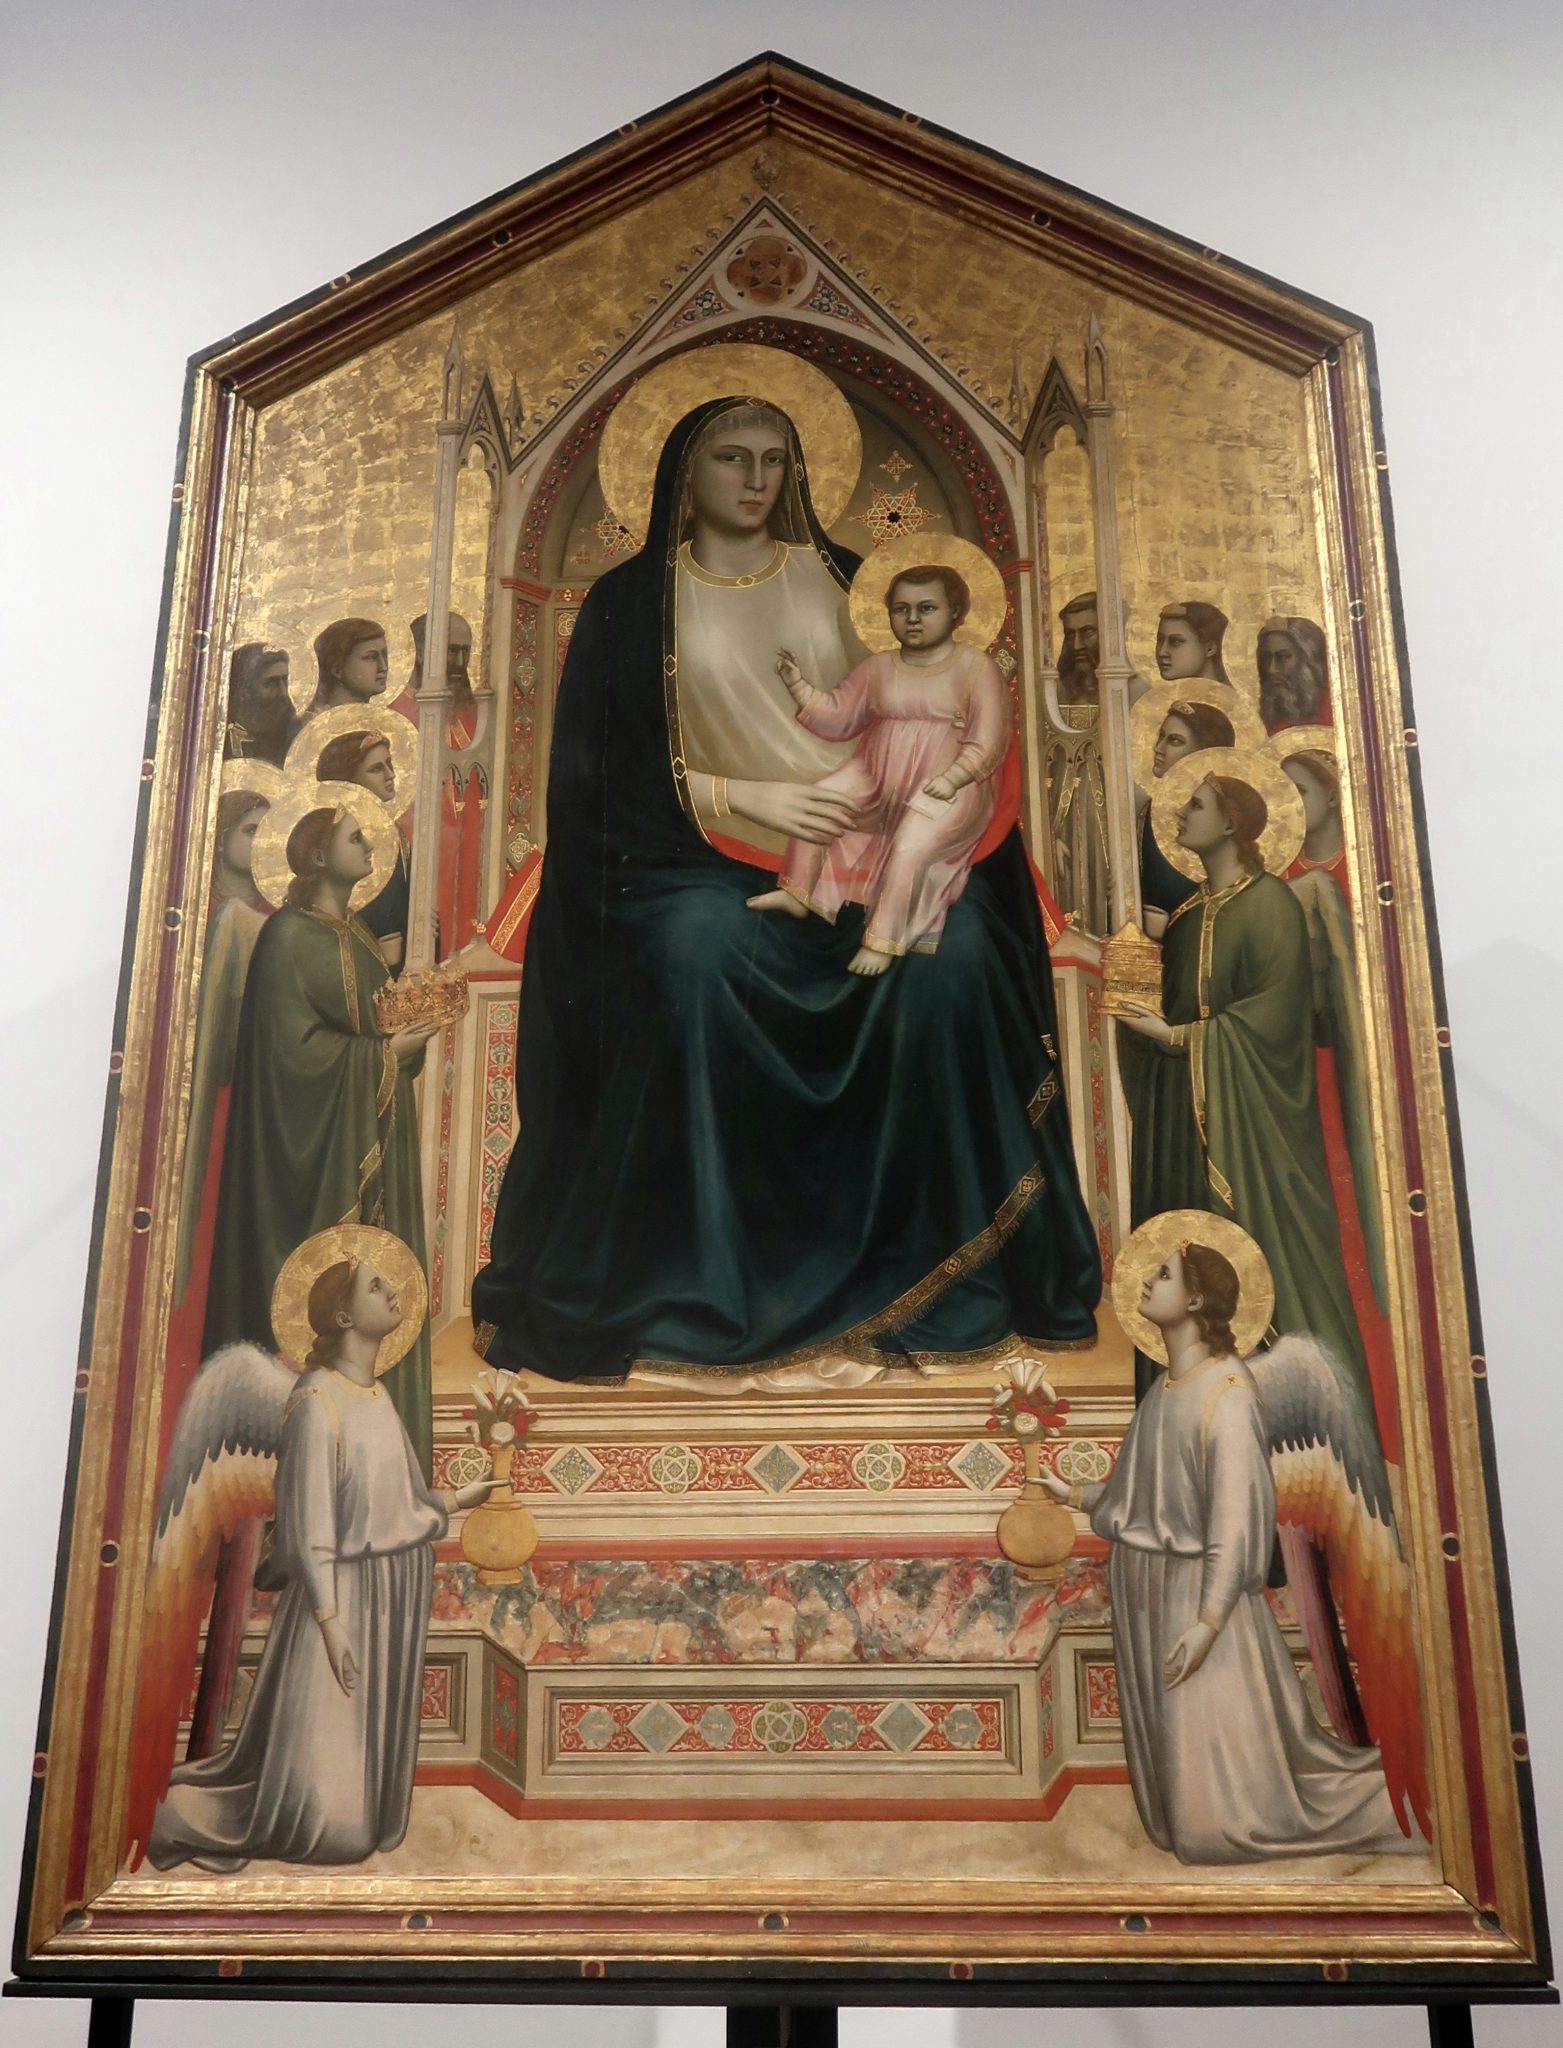 Giotto, Ognissanti Maesta o.1306-1310